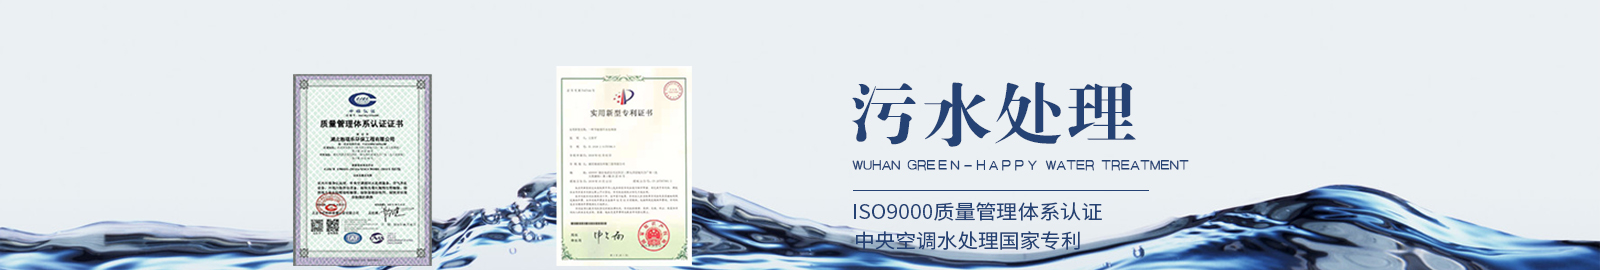 武汉水处理公司旗下业务之污水处理图